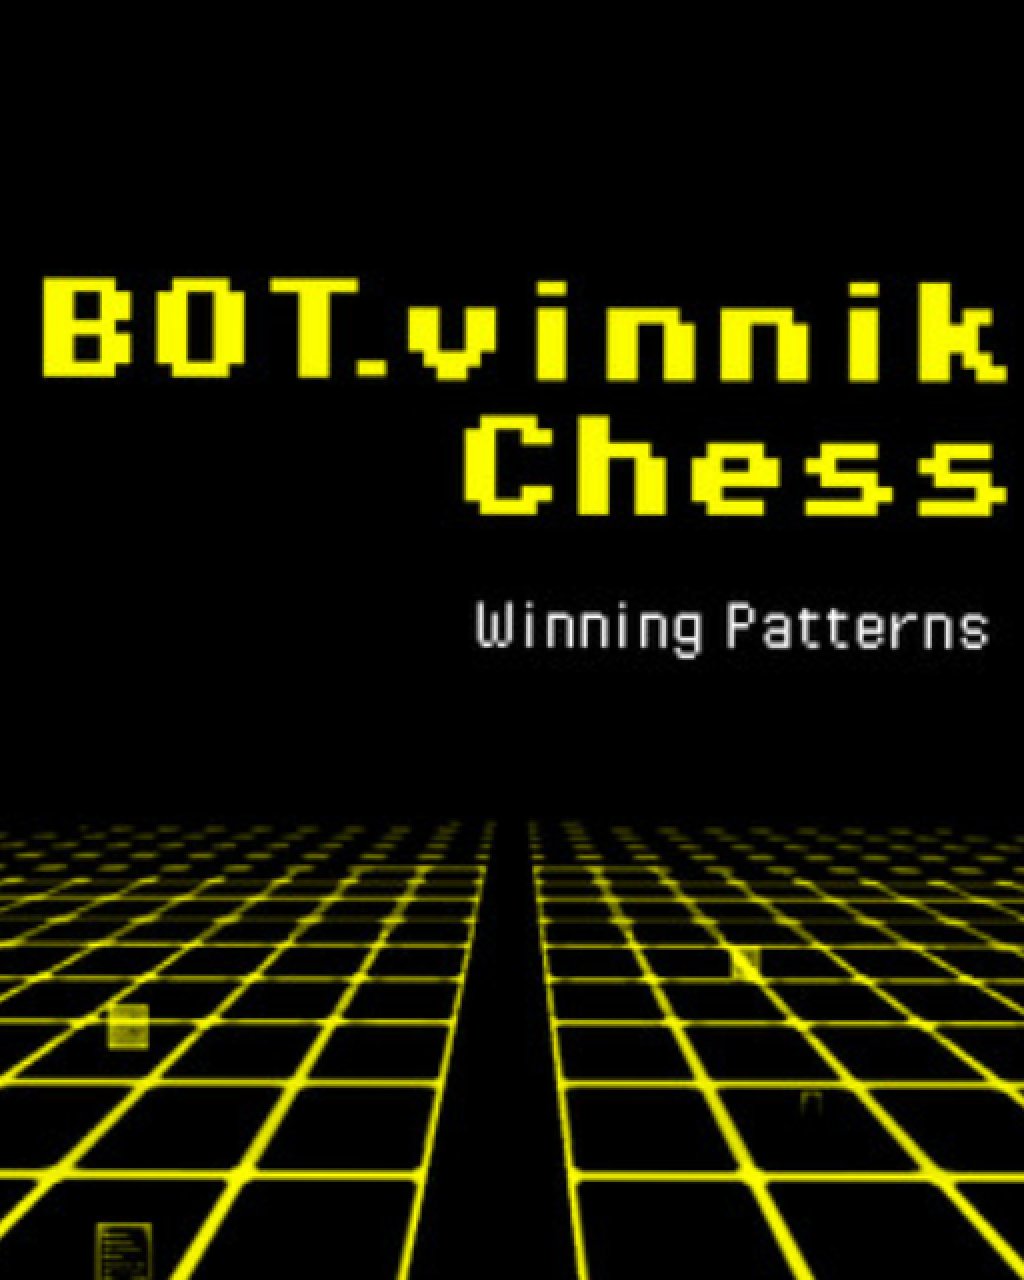 BOT.vinnik Chess Winning Patterns